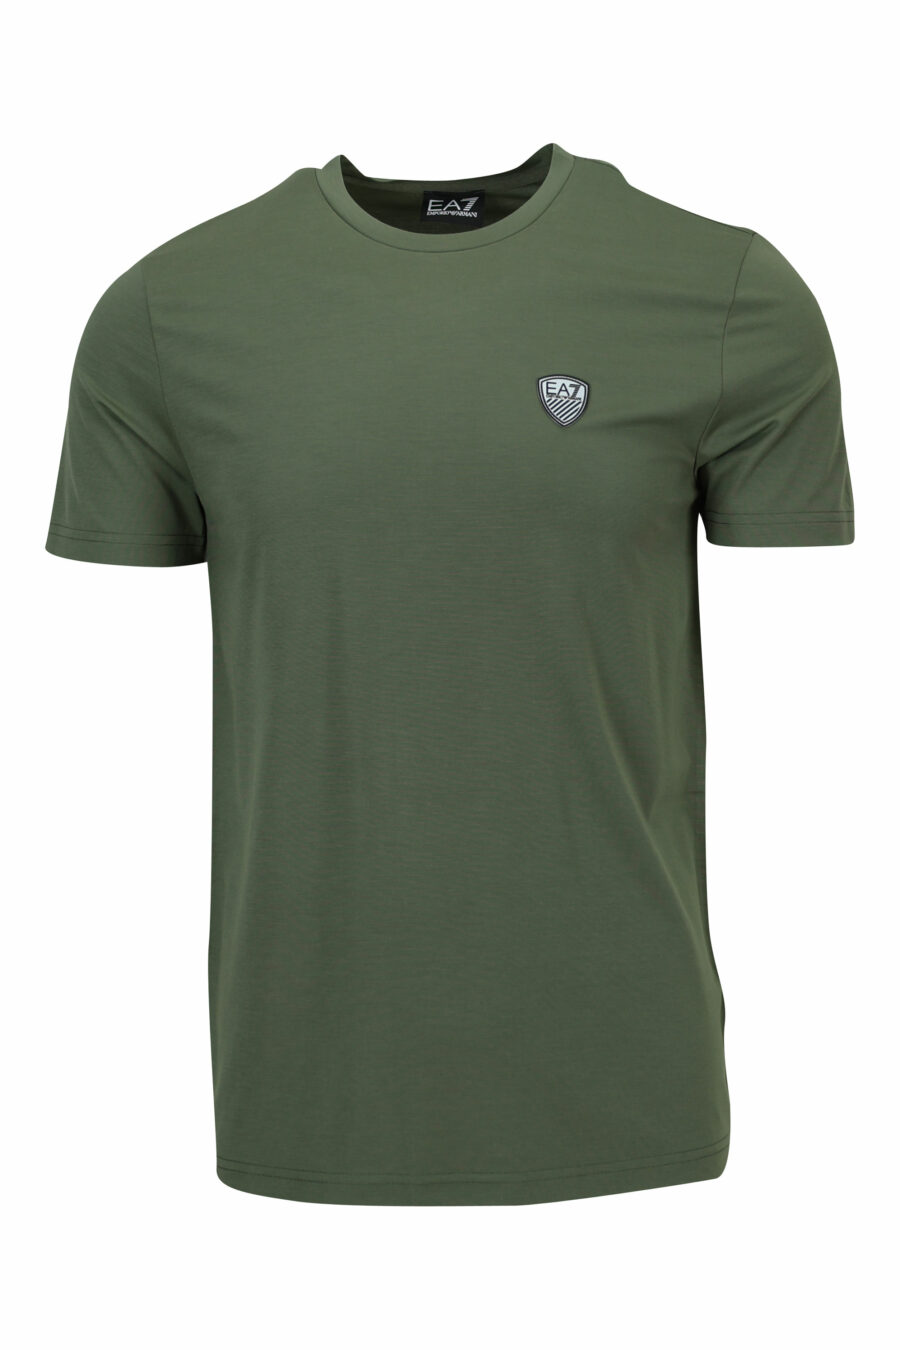 Camiseta verde "oversize" con minilogo "lux identity" escudo - 8057970700005